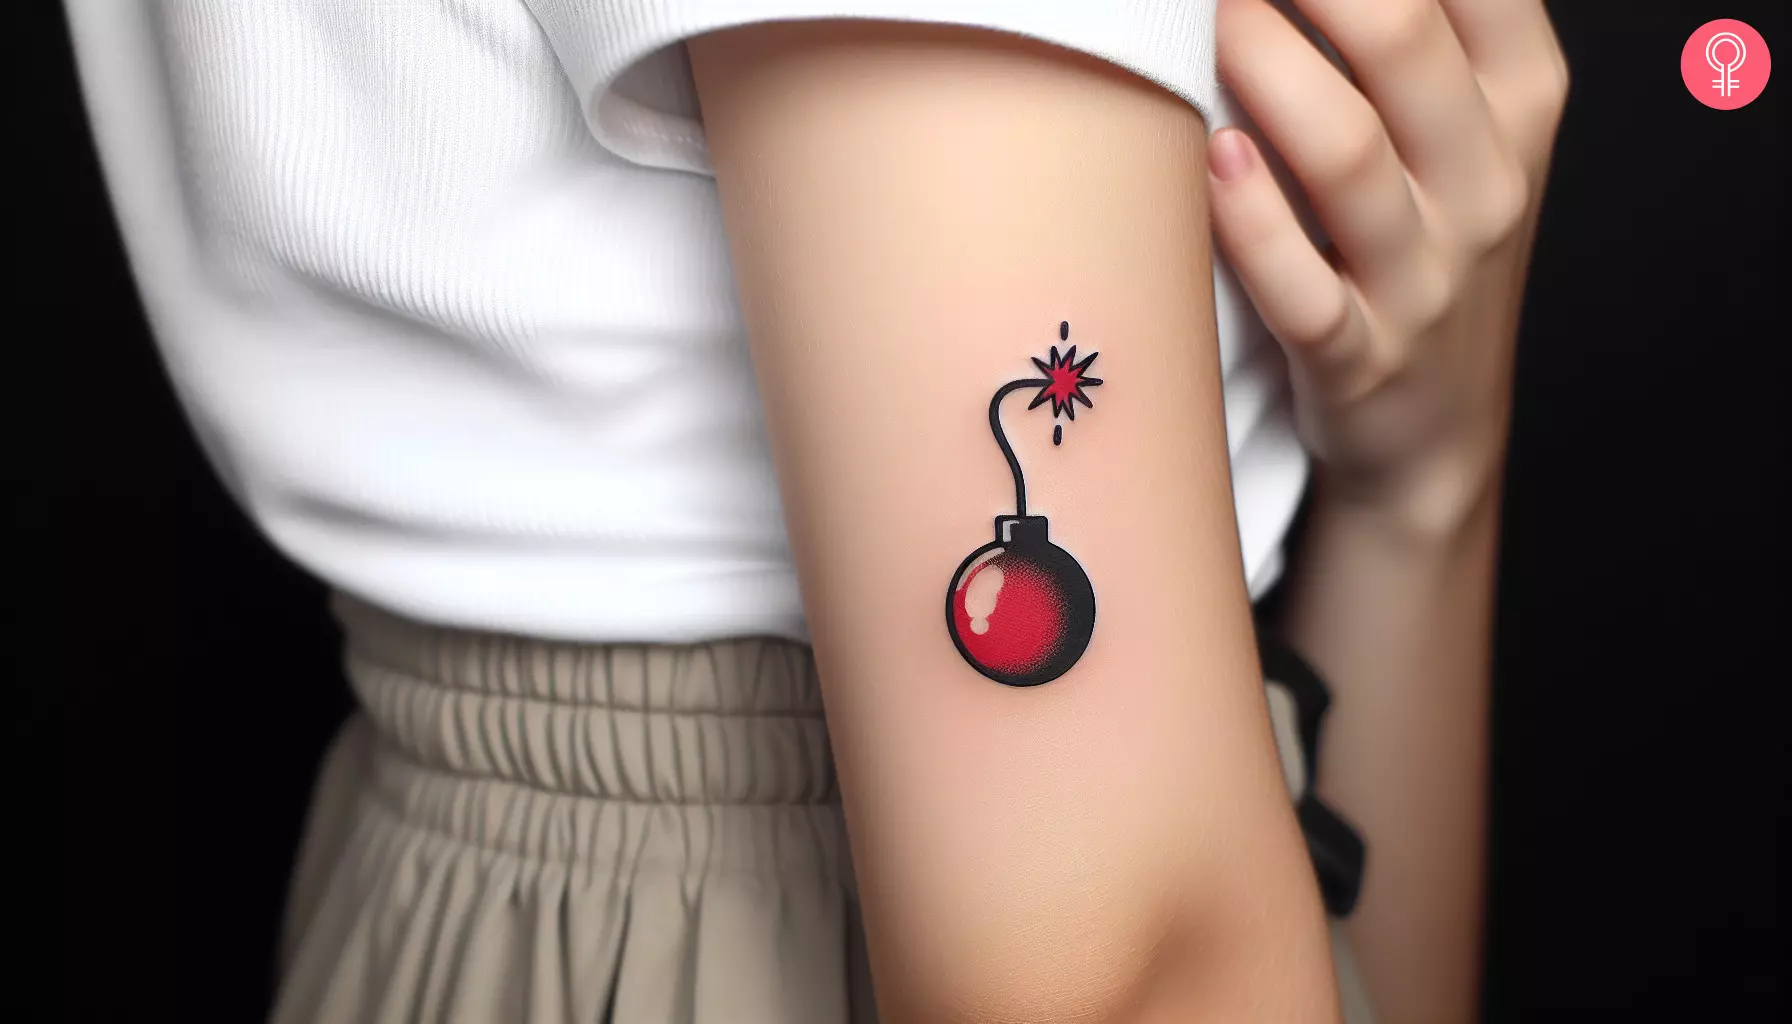 A minimalistic cherry bomb tattoo on the upper arm